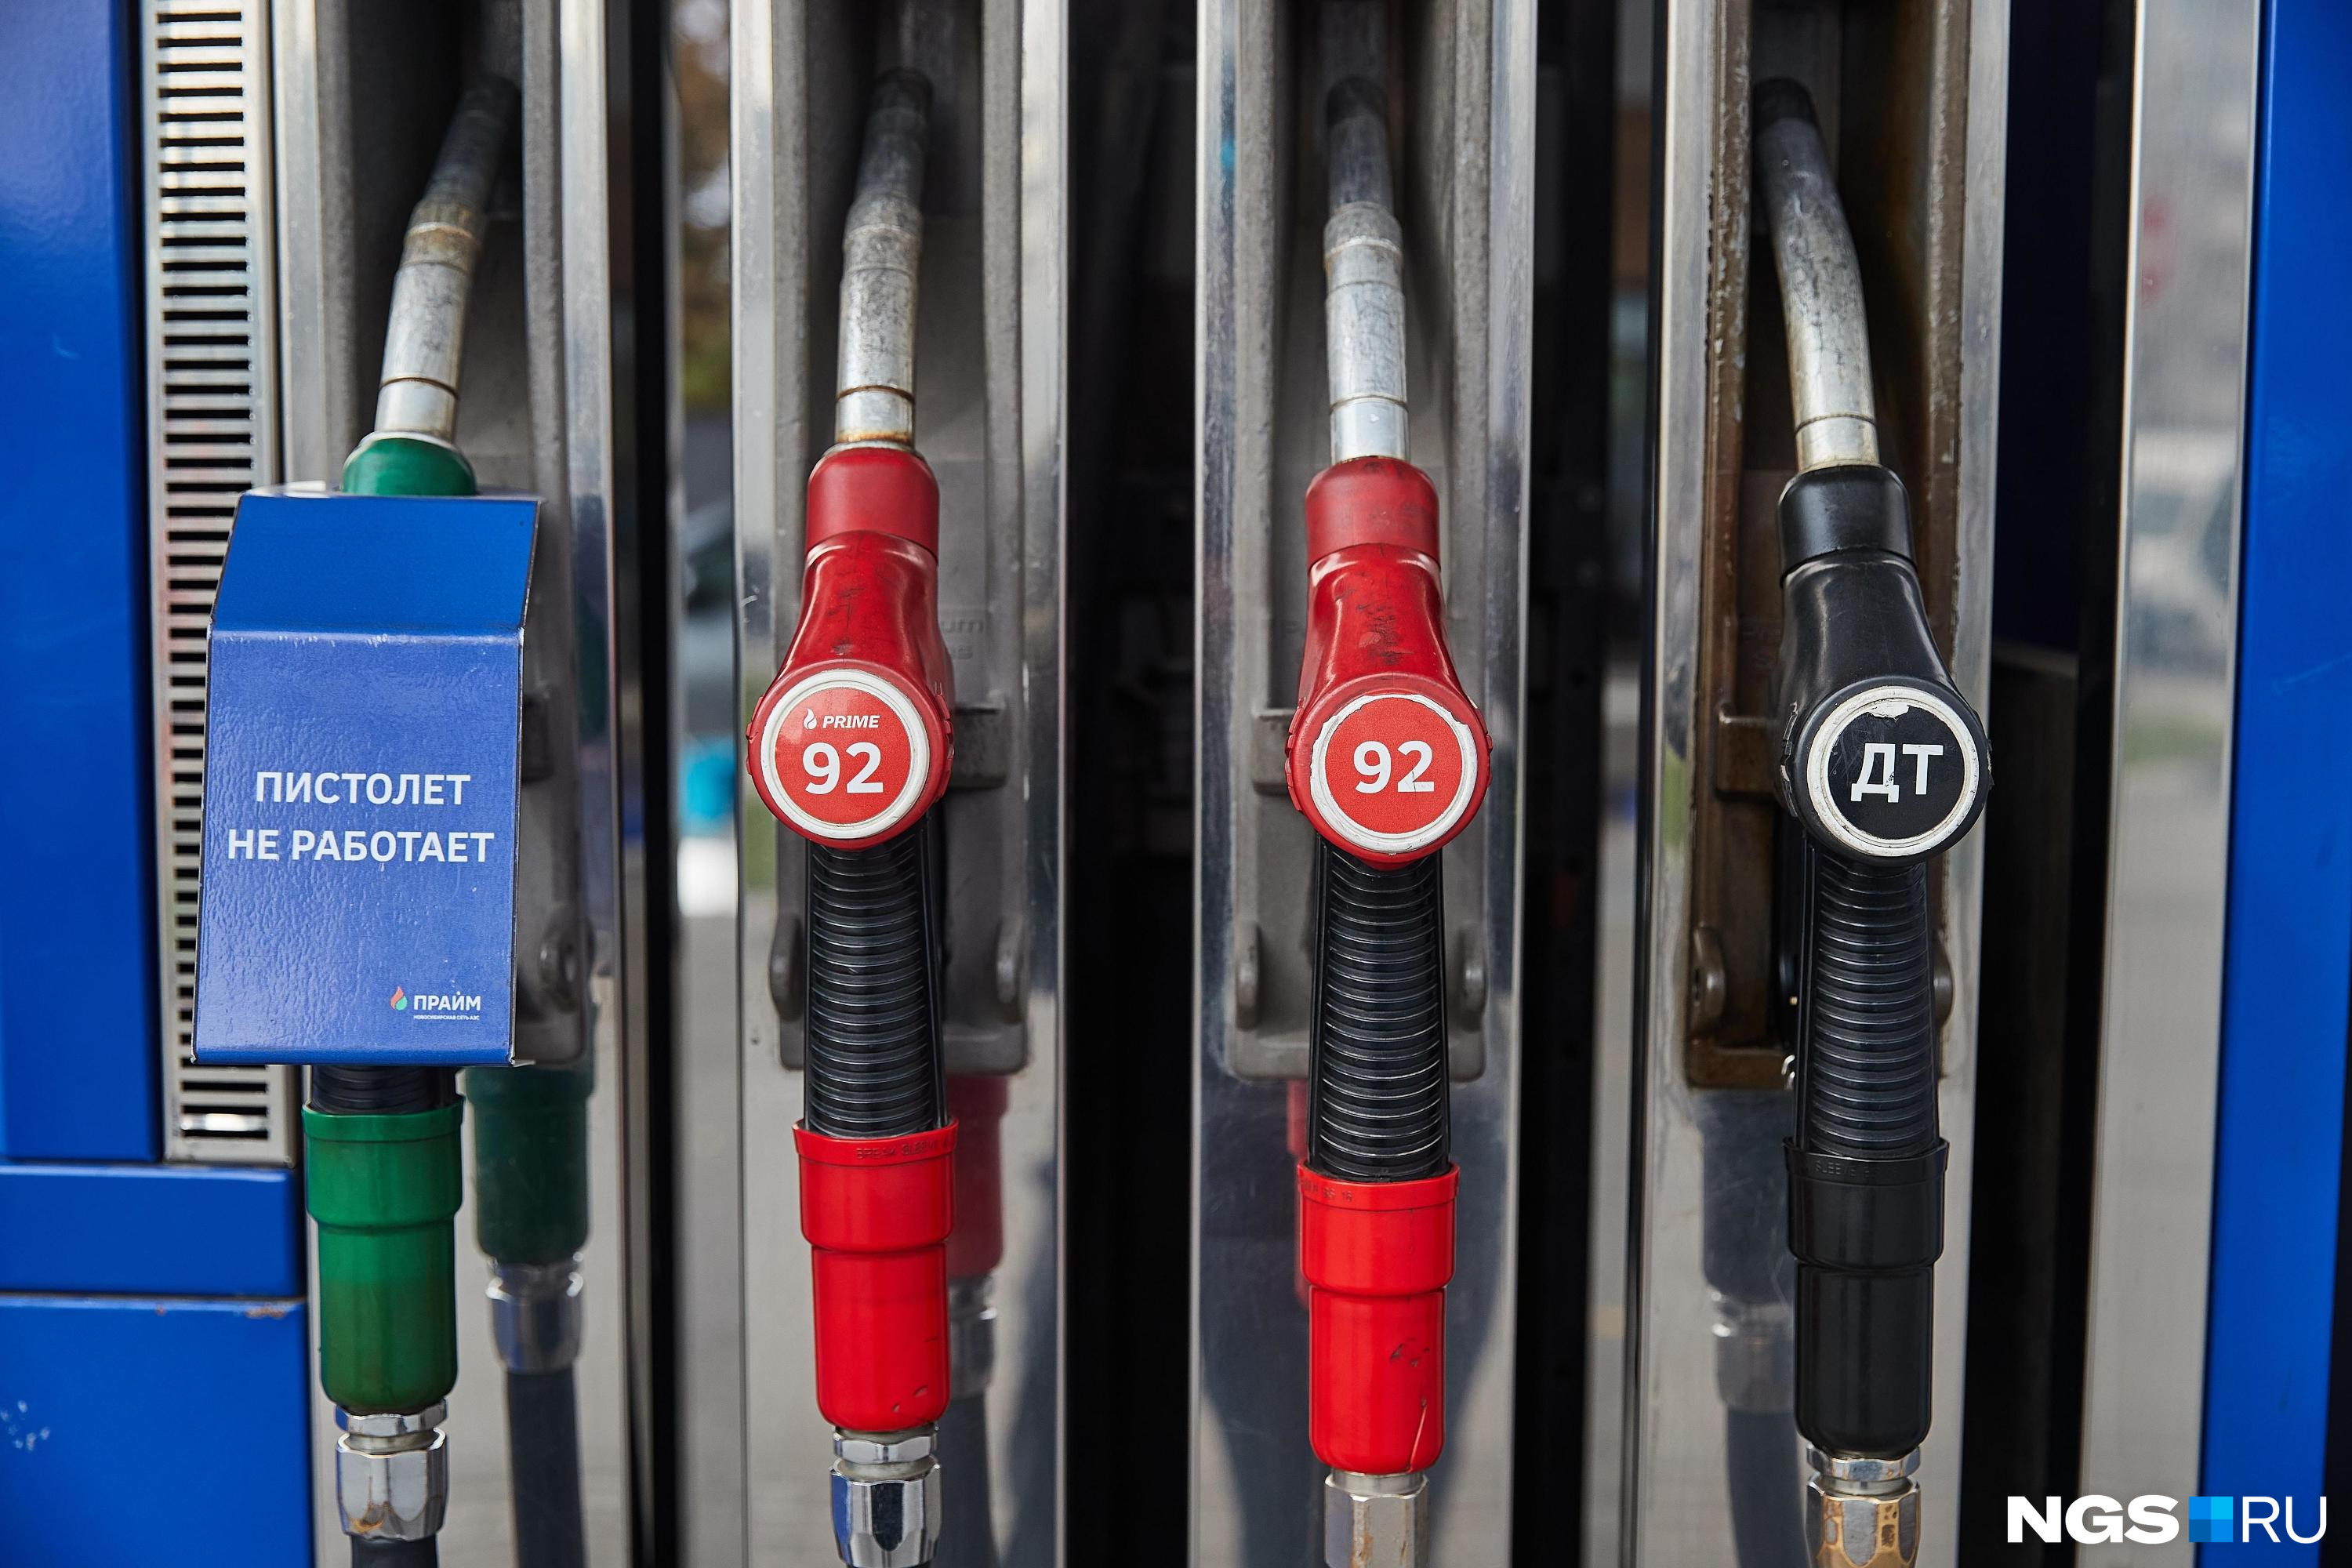 БПЛА vs нефть. Стоит ли ждать дефицита топлива и что будет с ценами после ЧП на «Лукойле» под Нижним — мнение экспертов